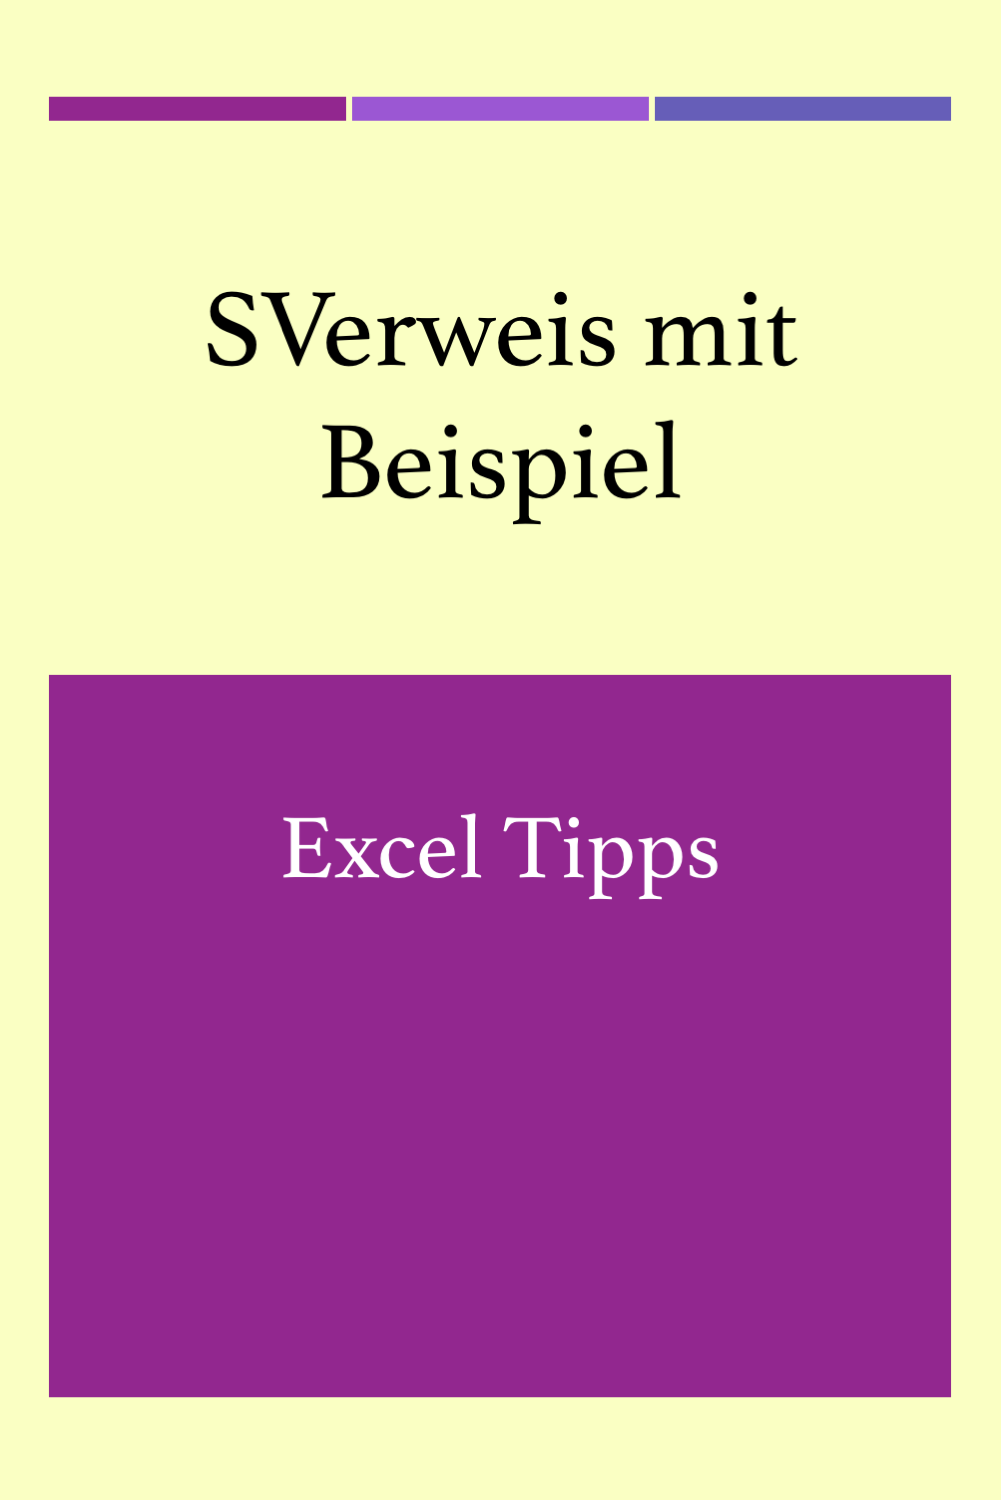 Sverweis Excel Tipps Tipps Tipps Und Tricks